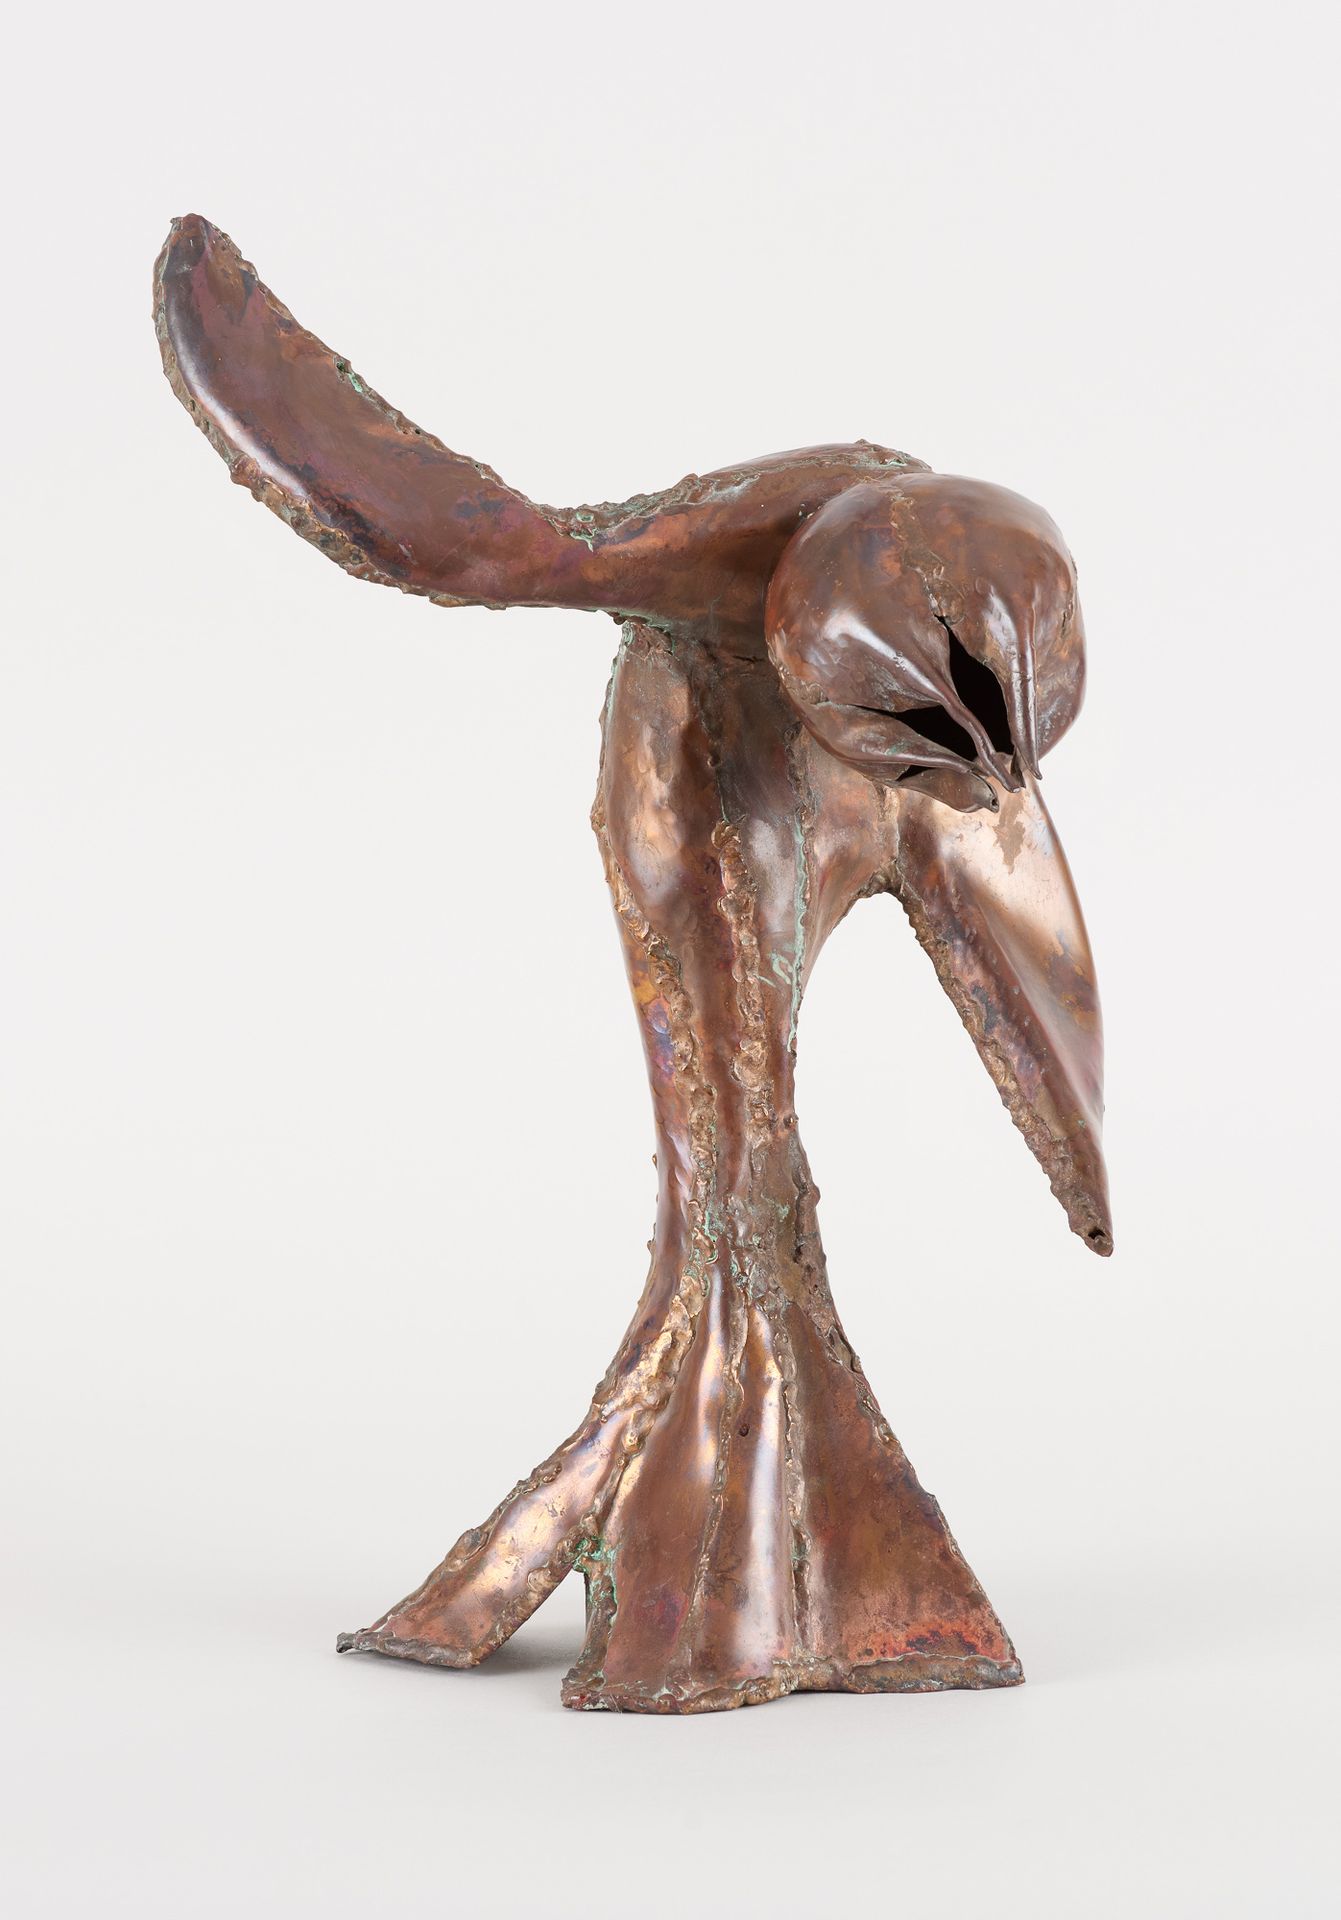 Reinhoud d'HAESE École belge (1928-2007) Metallskulptur: "Mispeln".

Von Reinhou&hellip;